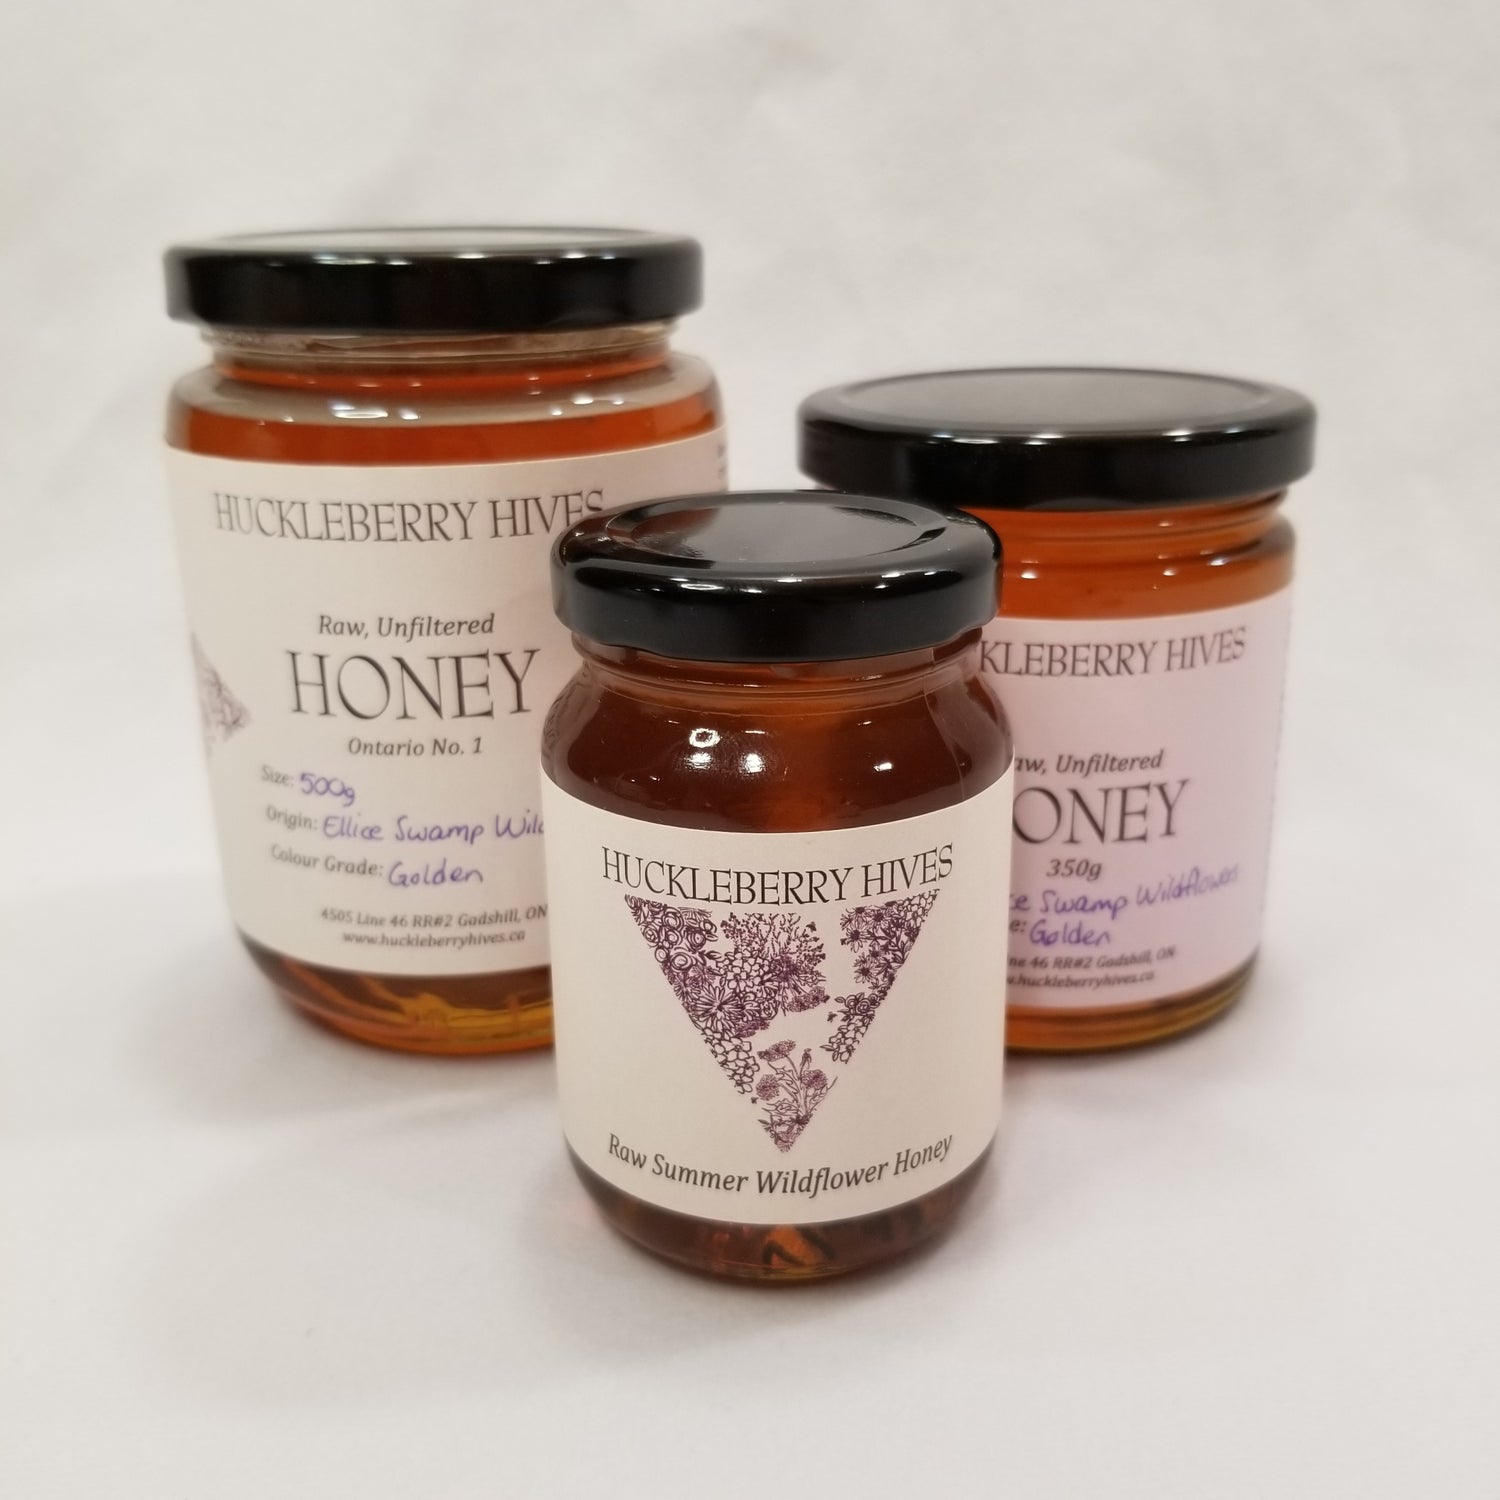 3 sizes of raw wildflower honey jars; 500g, 350g and 150g